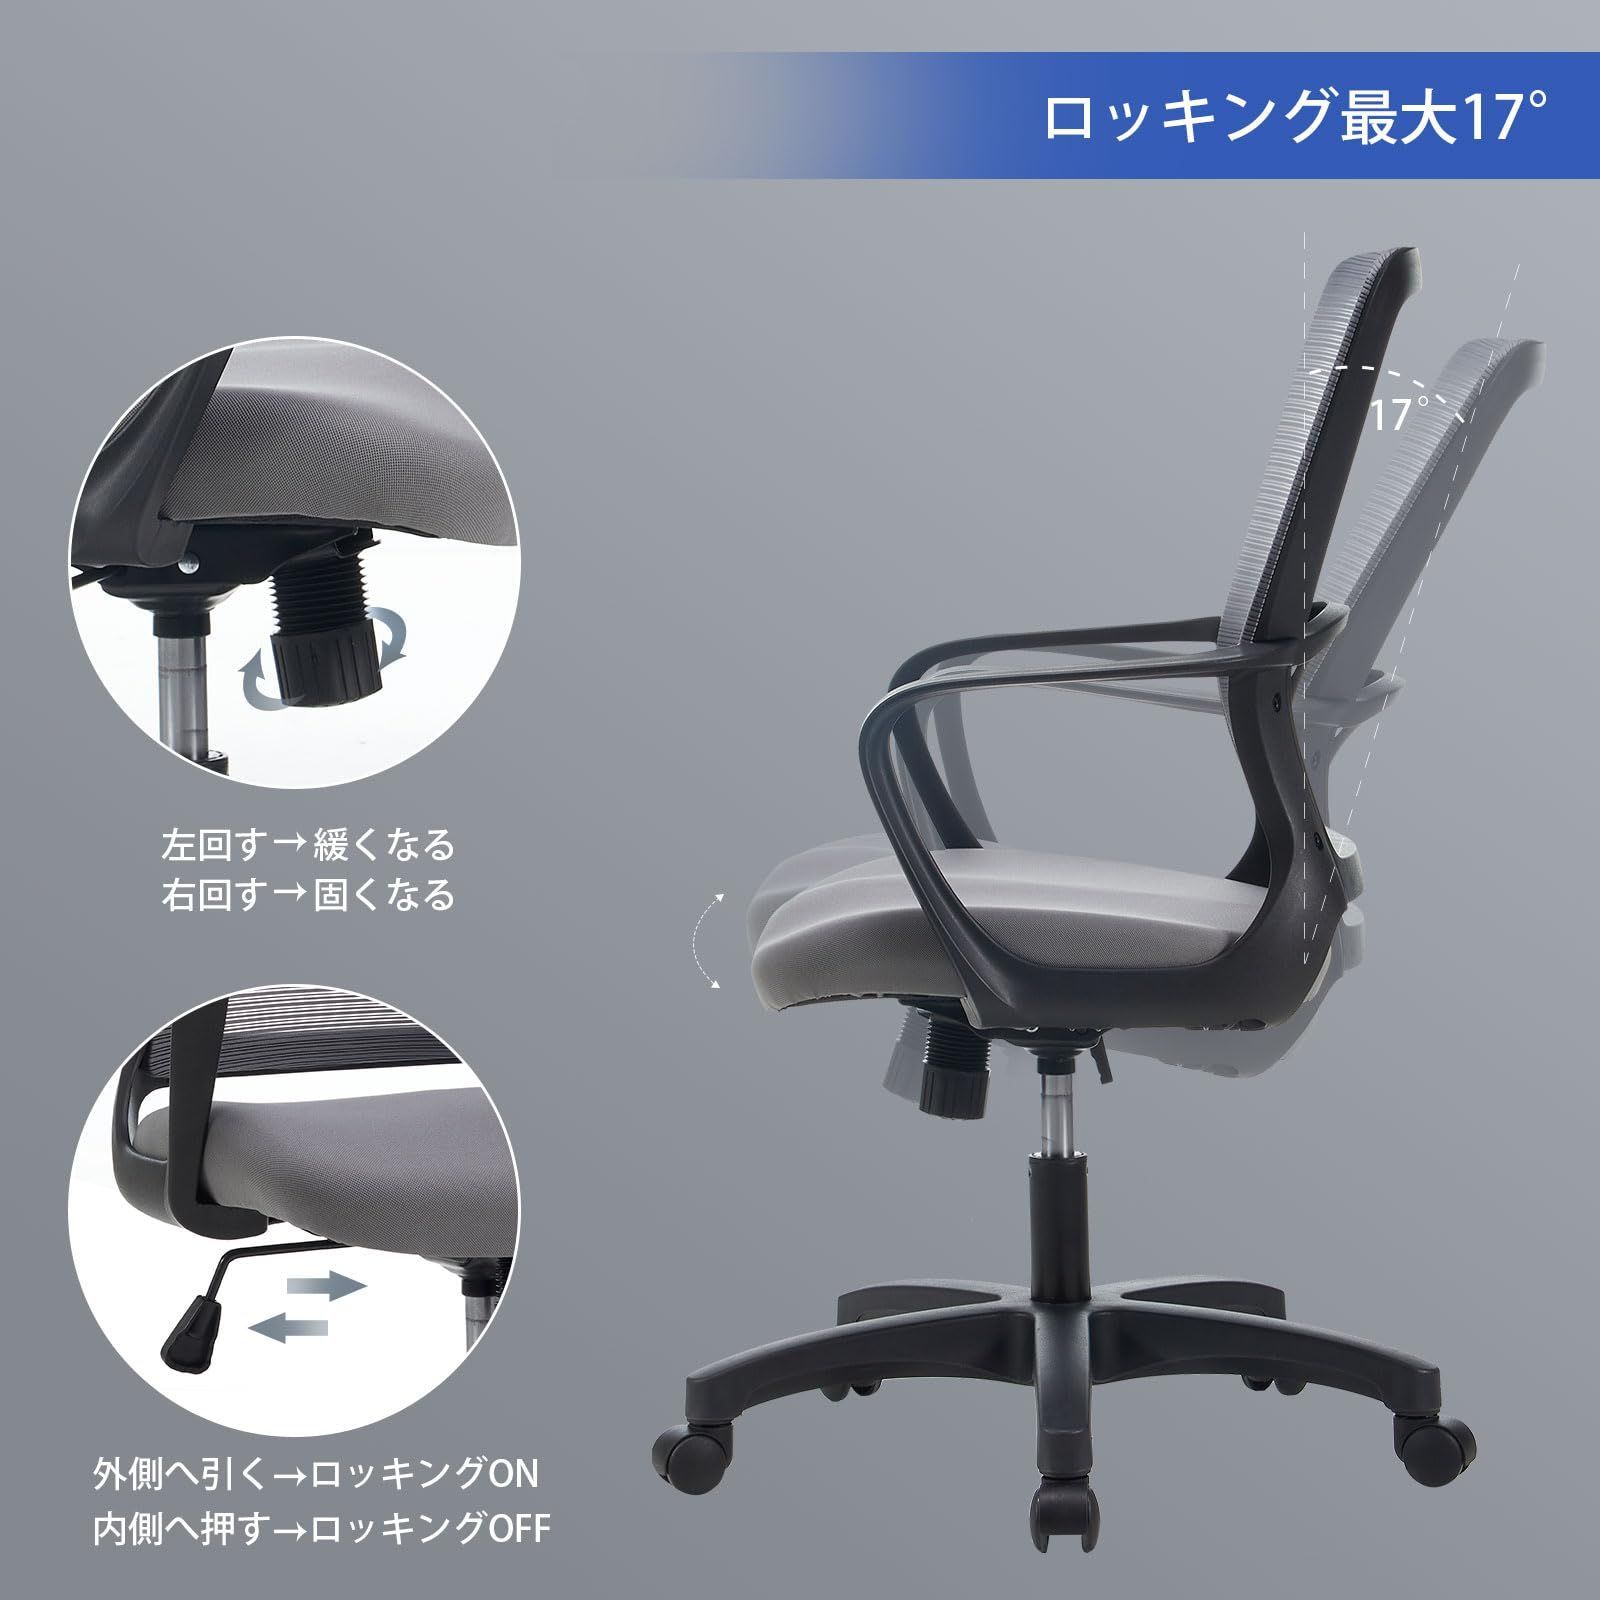 【色: ホワイト】Takumi Detailオフィスチェア デスクチェア メッシ10KG材質